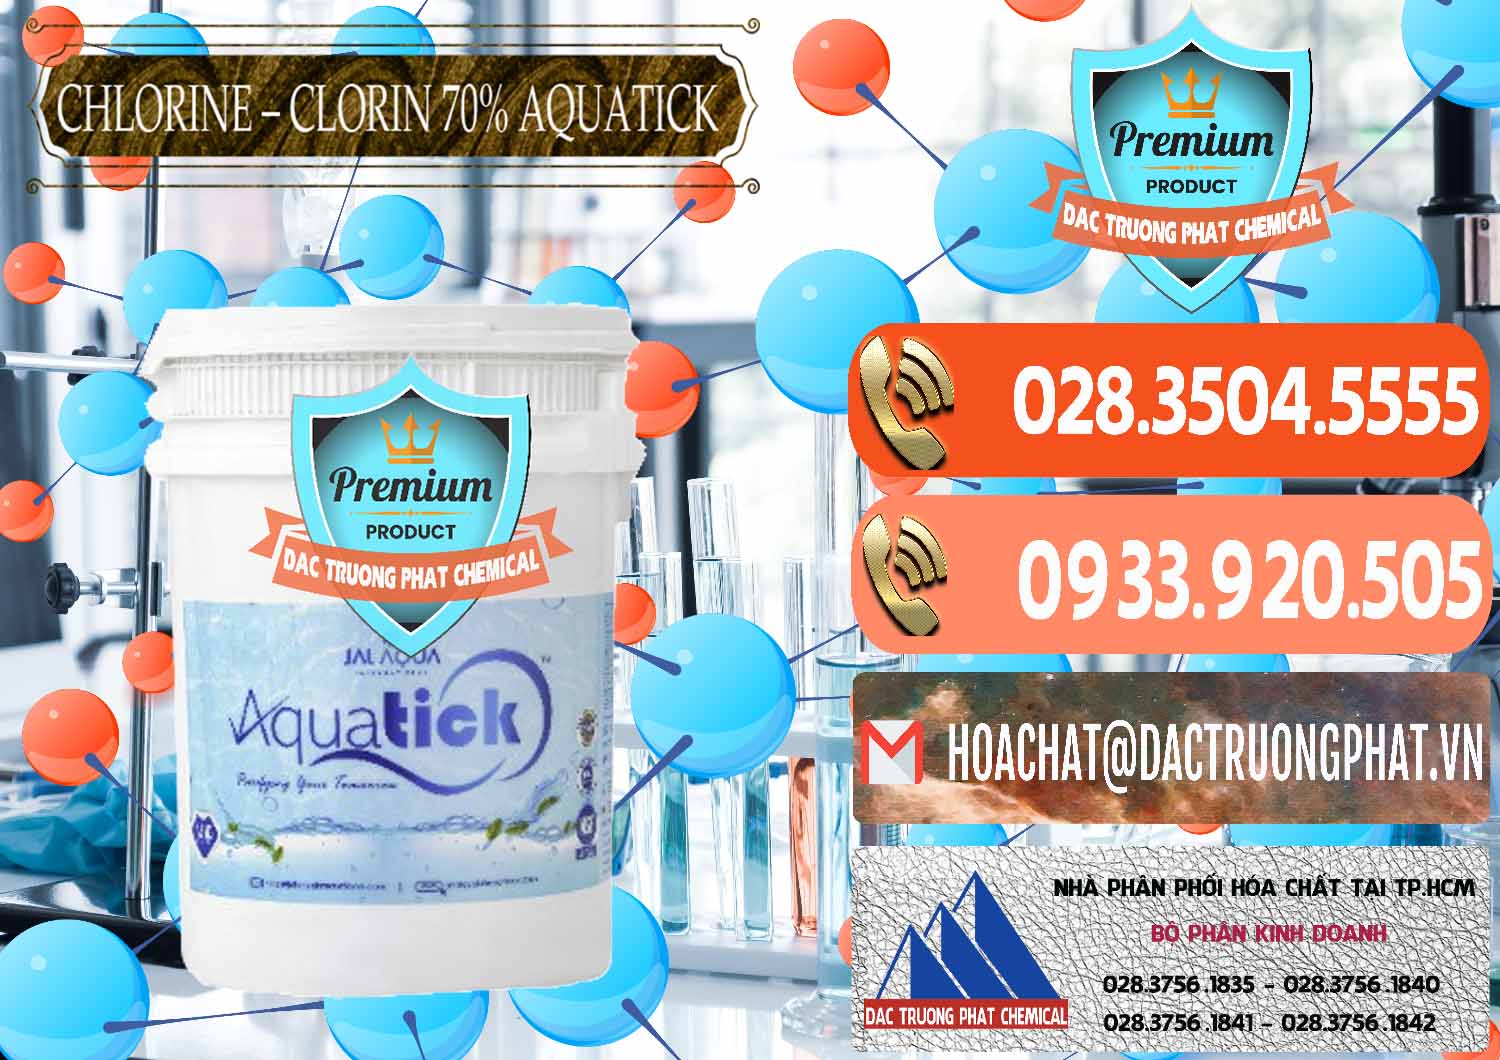 Cty chuyên bán - cung cấp Chlorine – Clorin 70% Aquatick Thùng Cao Jal Aqua Ấn Độ India - 0237 - Đơn vị chuyên bán & phân phối hóa chất tại TP.HCM - hoachatmientay.com